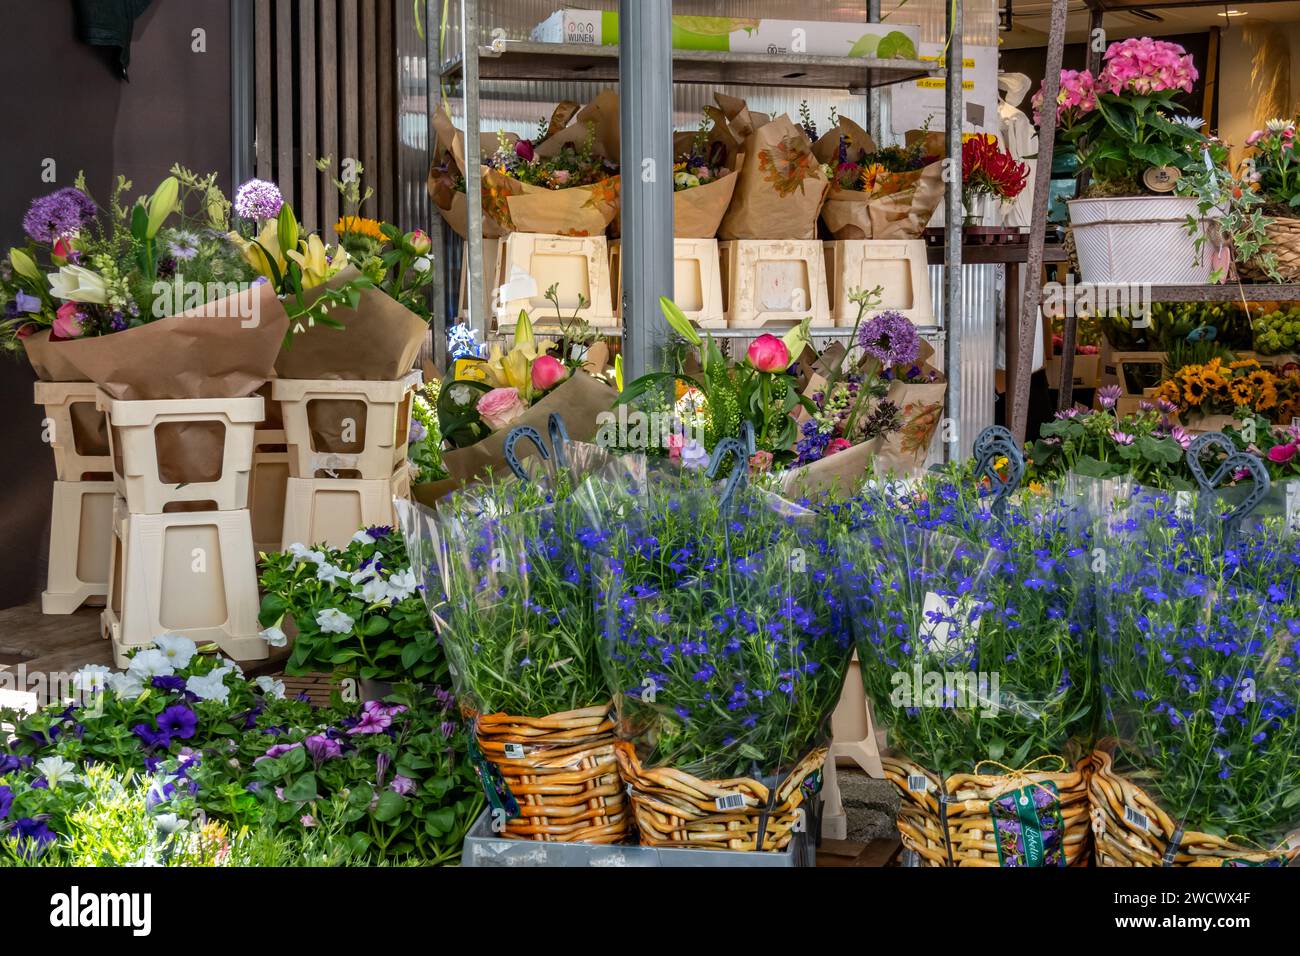 Présentation de vases avec fleurs, bouquets et plantes en pot dans un kiosque à fleurs dans le centre-ville de Hilversum, pays-Bas Banque D'Images